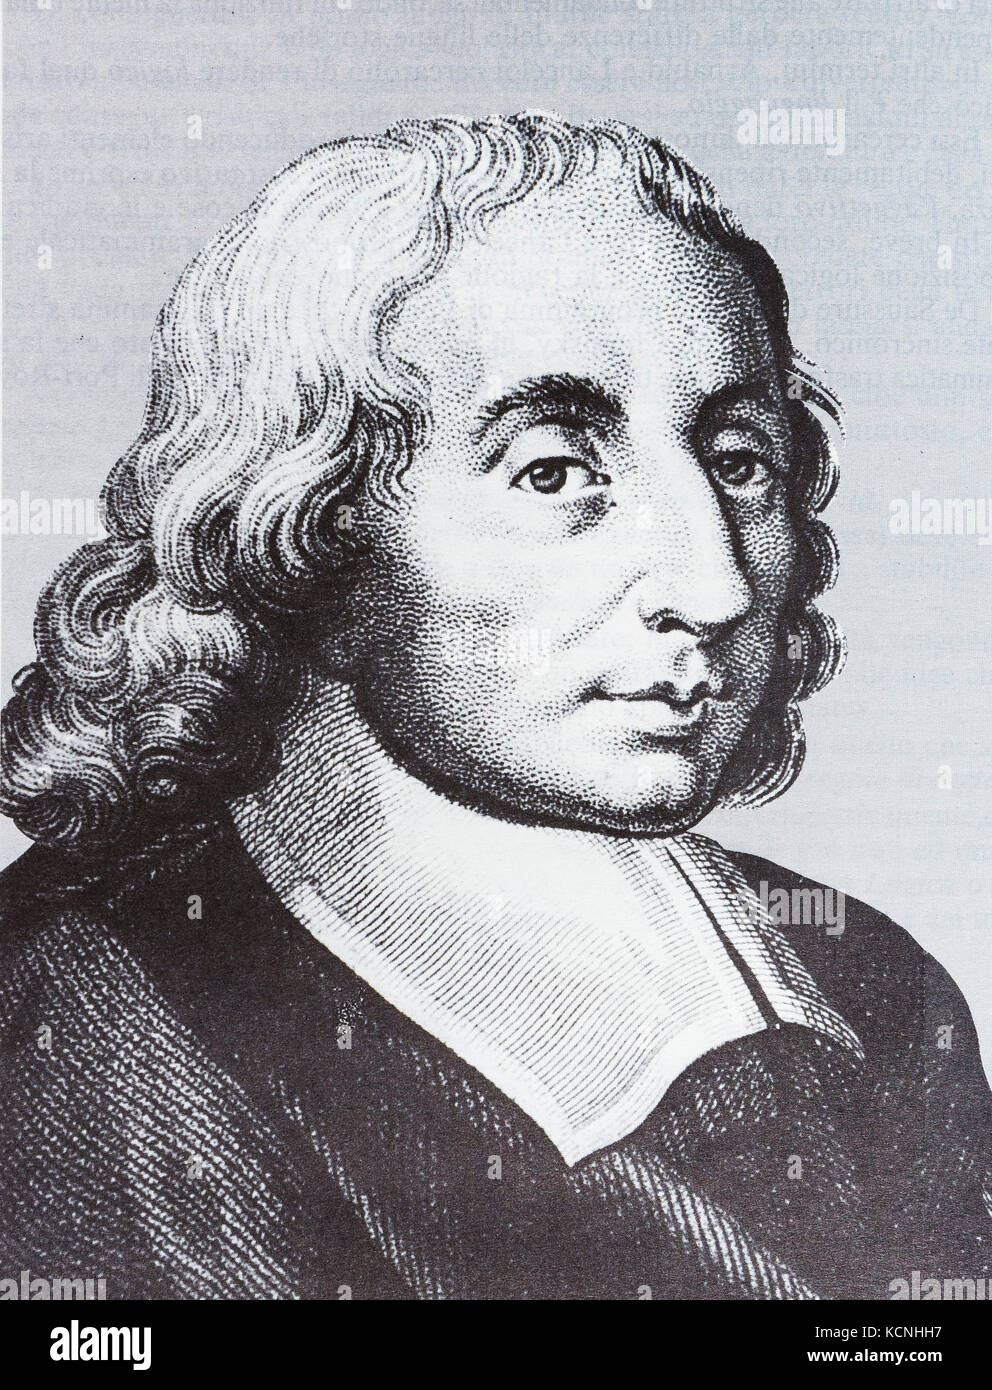 Portrait of the scientist philosopher Blaise Pascal Stock Photo